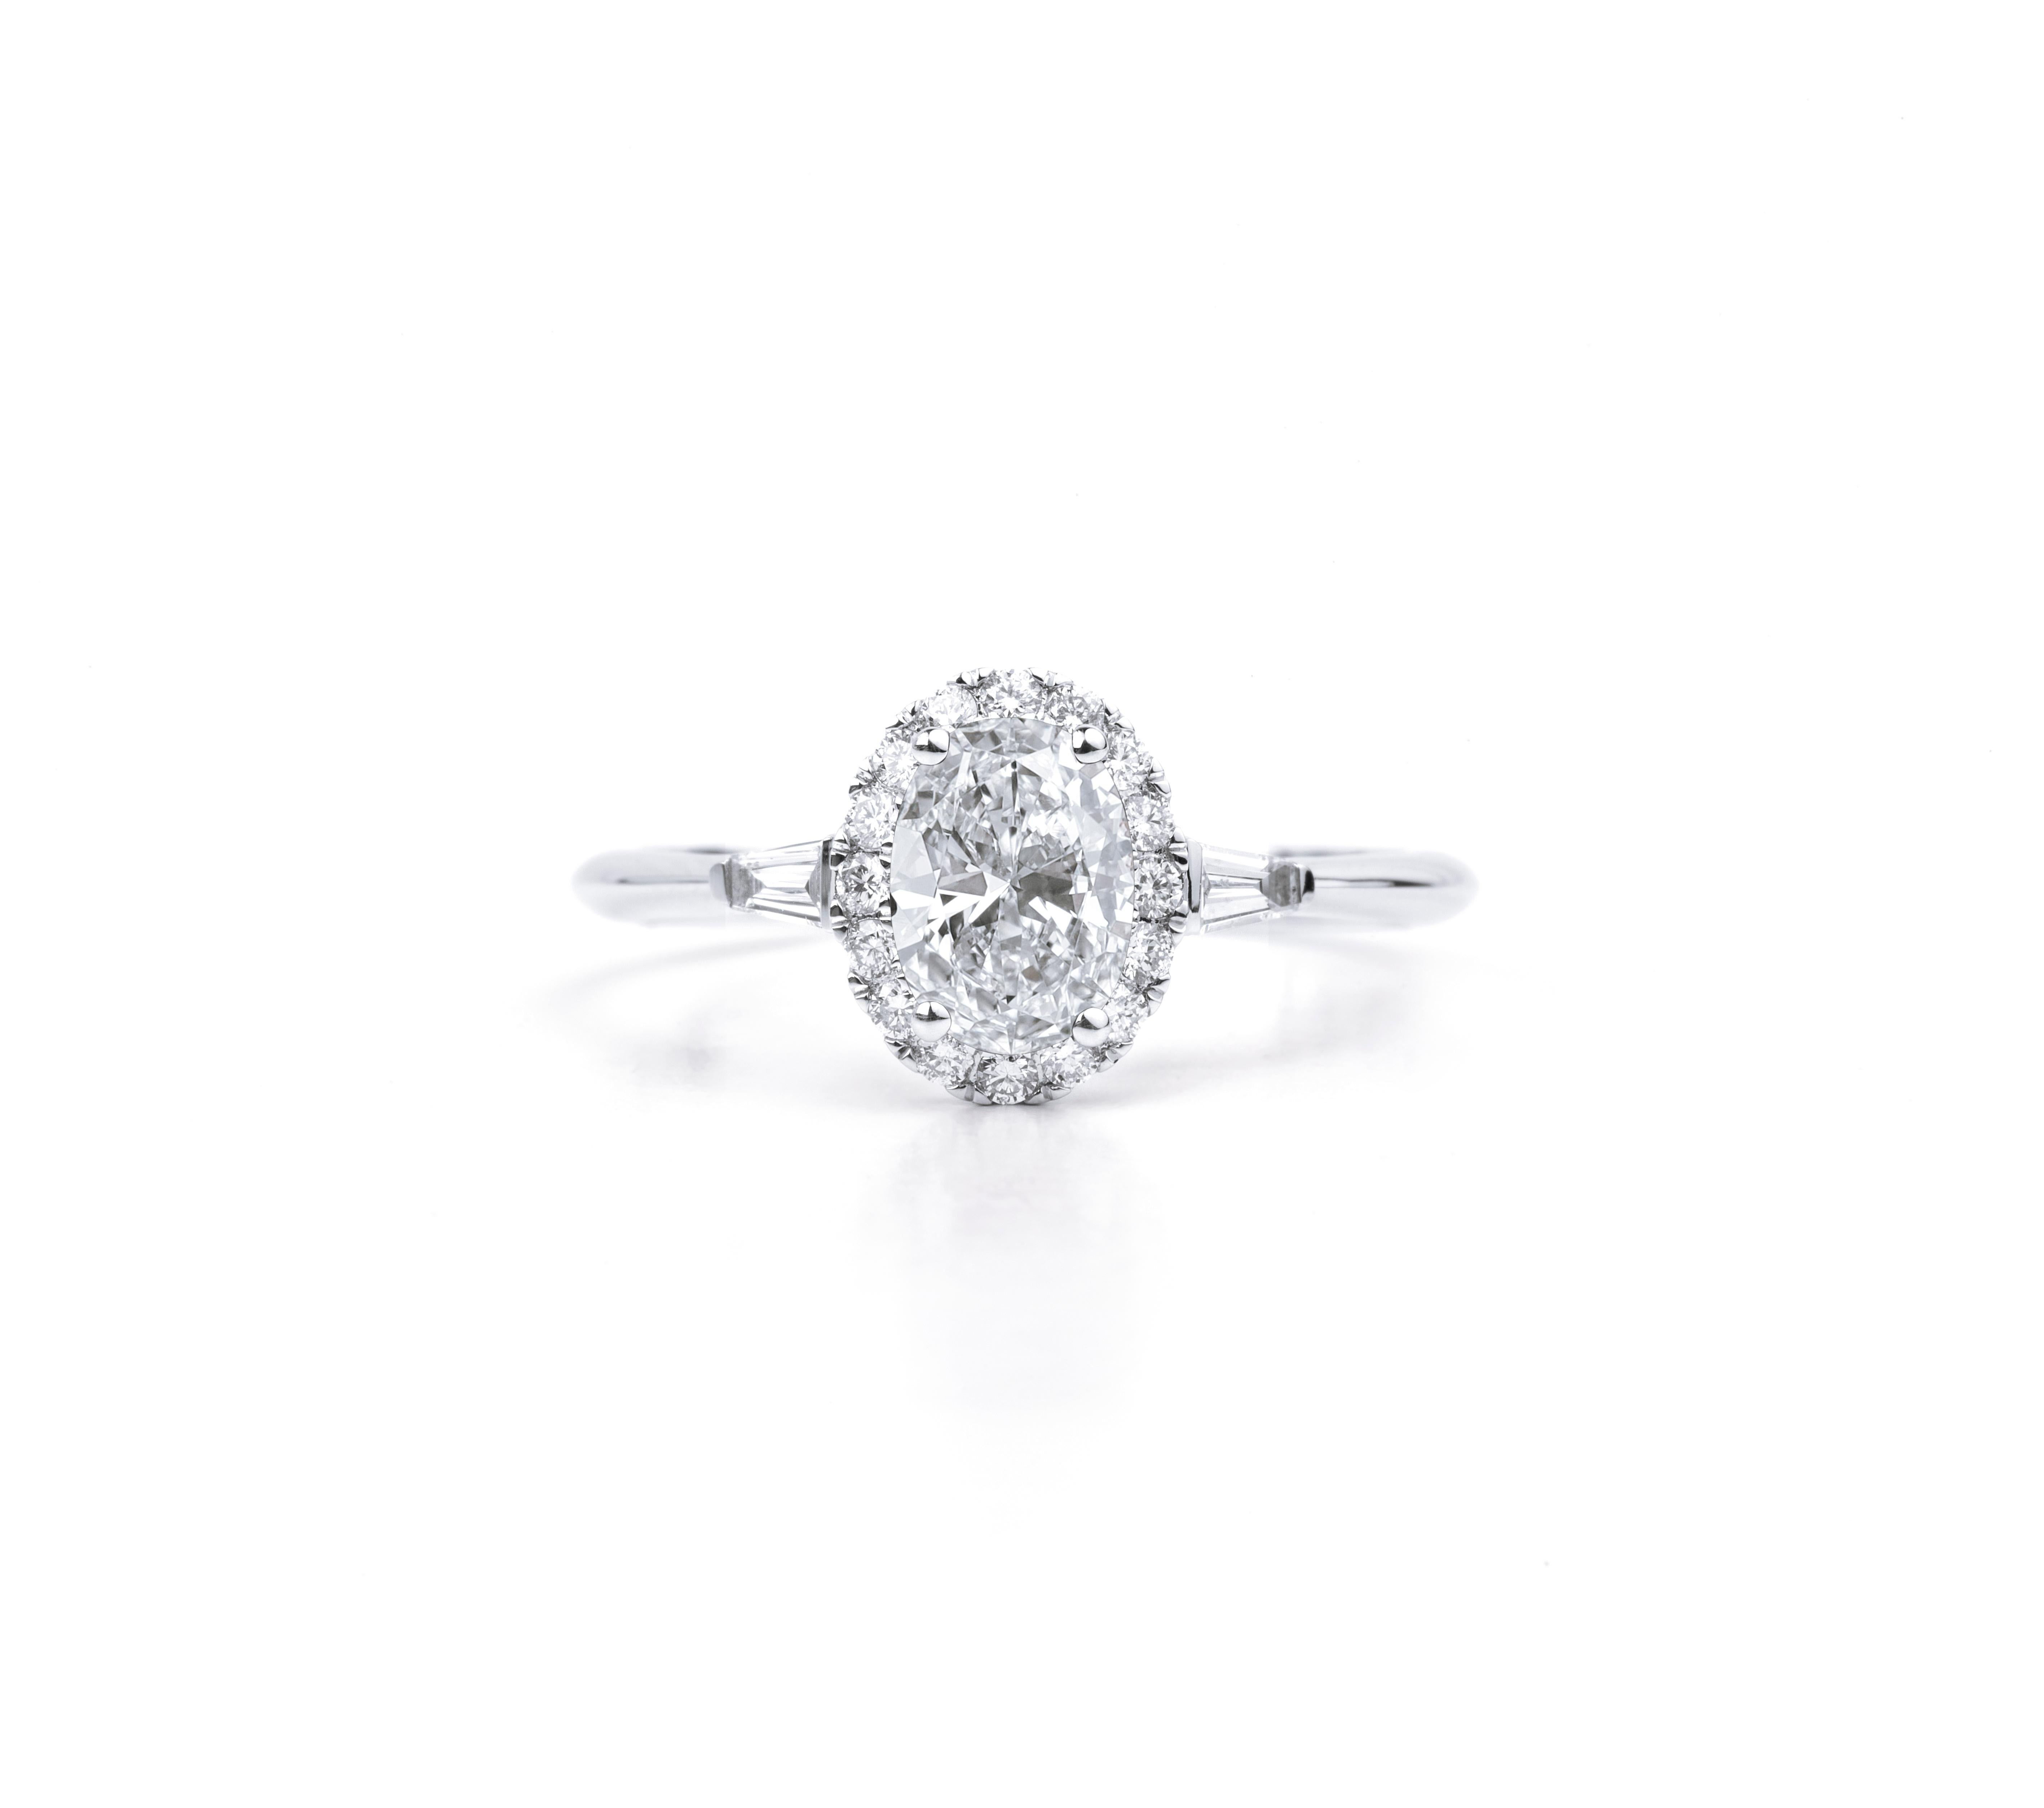 GIA Report Certified 1 carat E VS1 Oval Cut Diamond Engagement Cocktail Ring With Baguette Diamonds

Disponible en or blanc 18k.

Le même design peut être réalisé avec d'autres pierres précieuses sur demande.

Détails du produit :

- Or massif

-